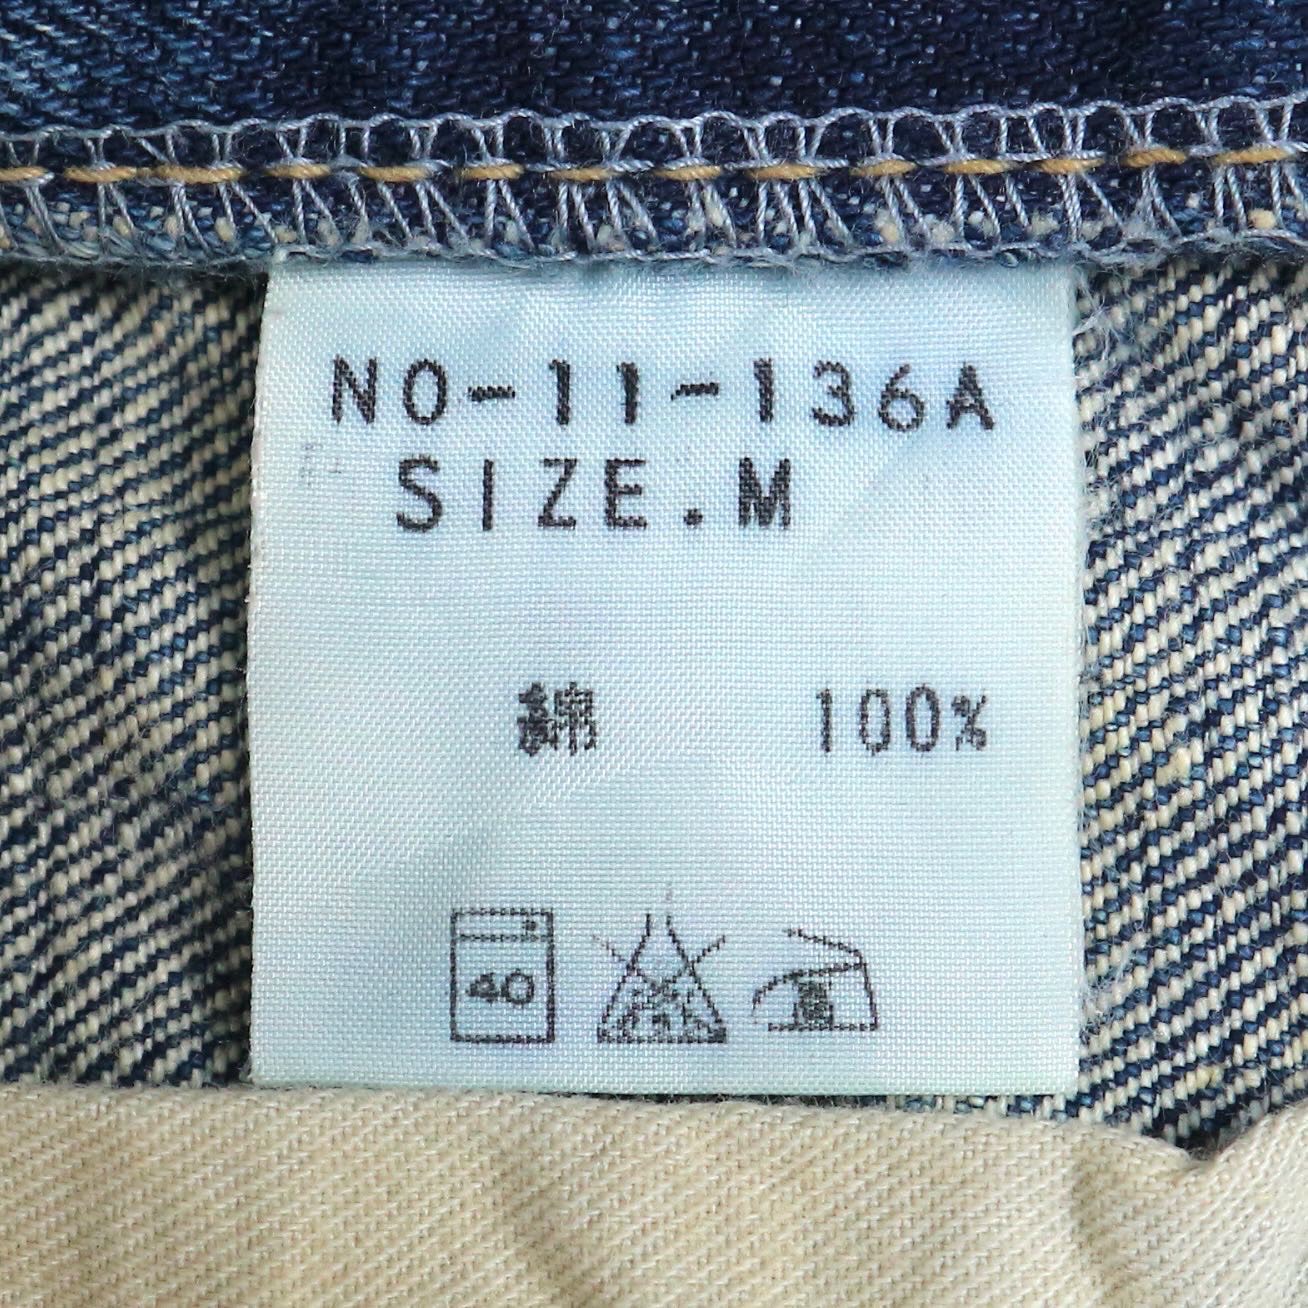 D.M.G Jeans Size 31